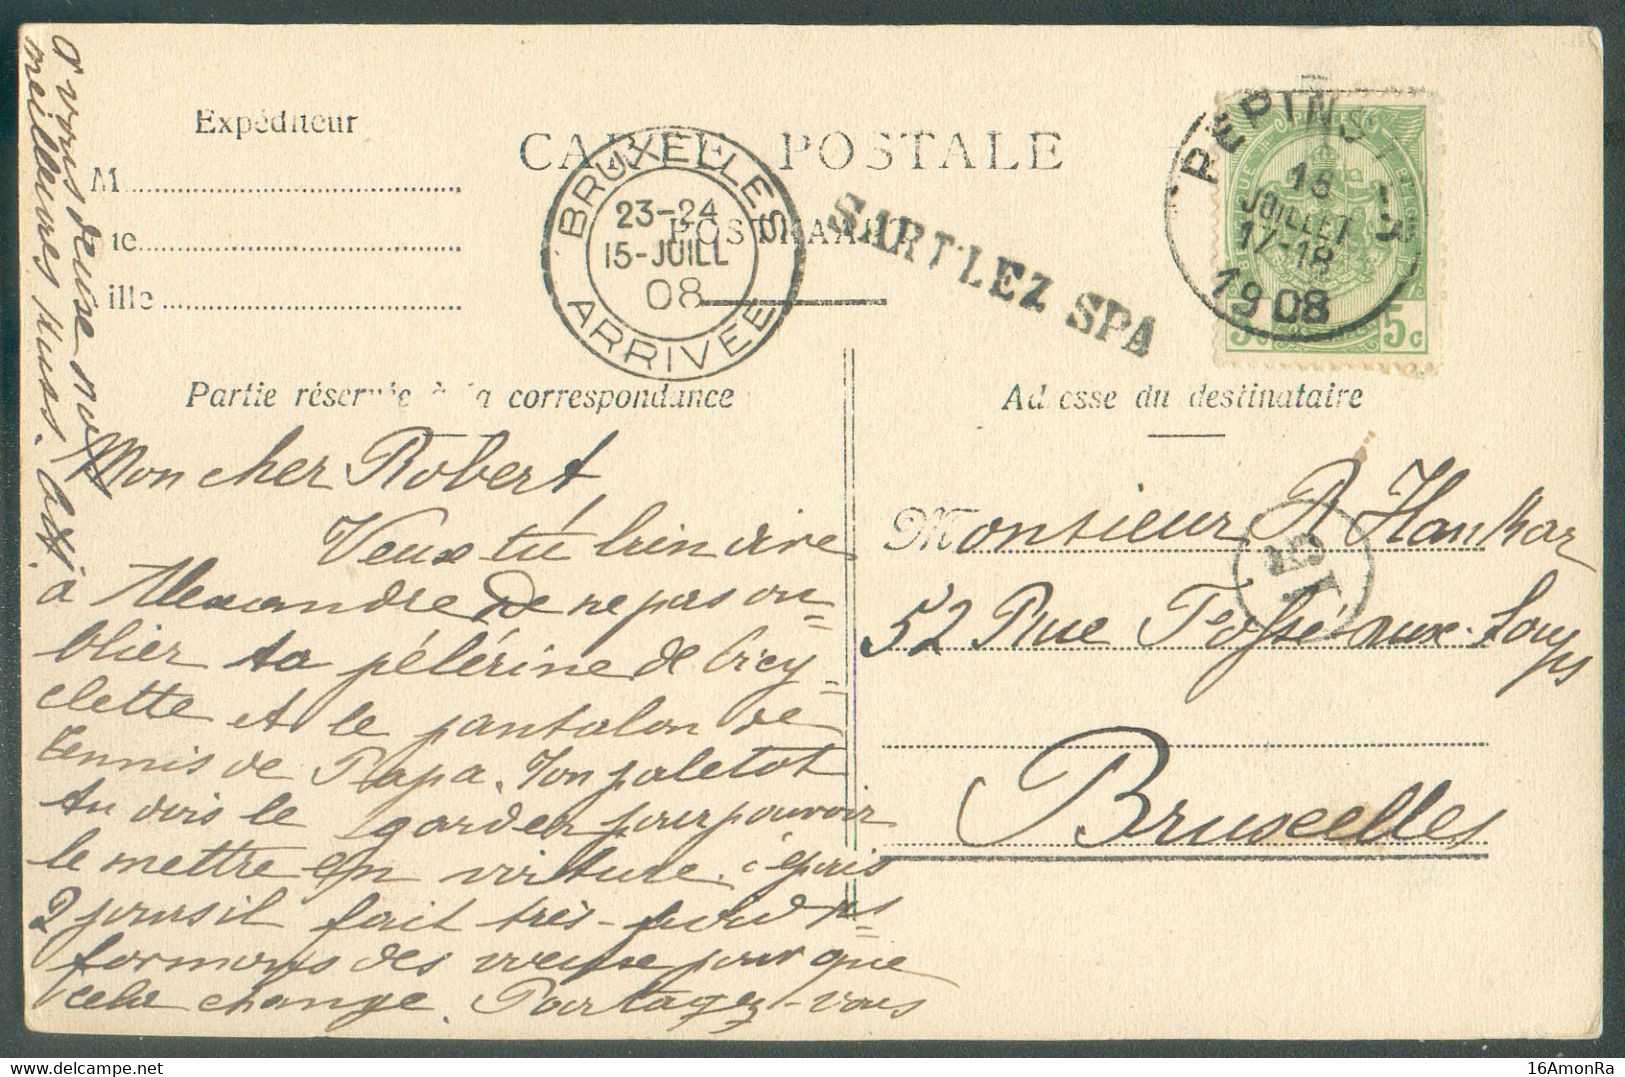 N°83 - 5 Centimes Obl. Sc PEPINSTER sur C.P. Du 18 Juillet 1908 + Griffe SART LEZ SPA vers Bruxelles.  Rare - 18068 - Sello Lineal